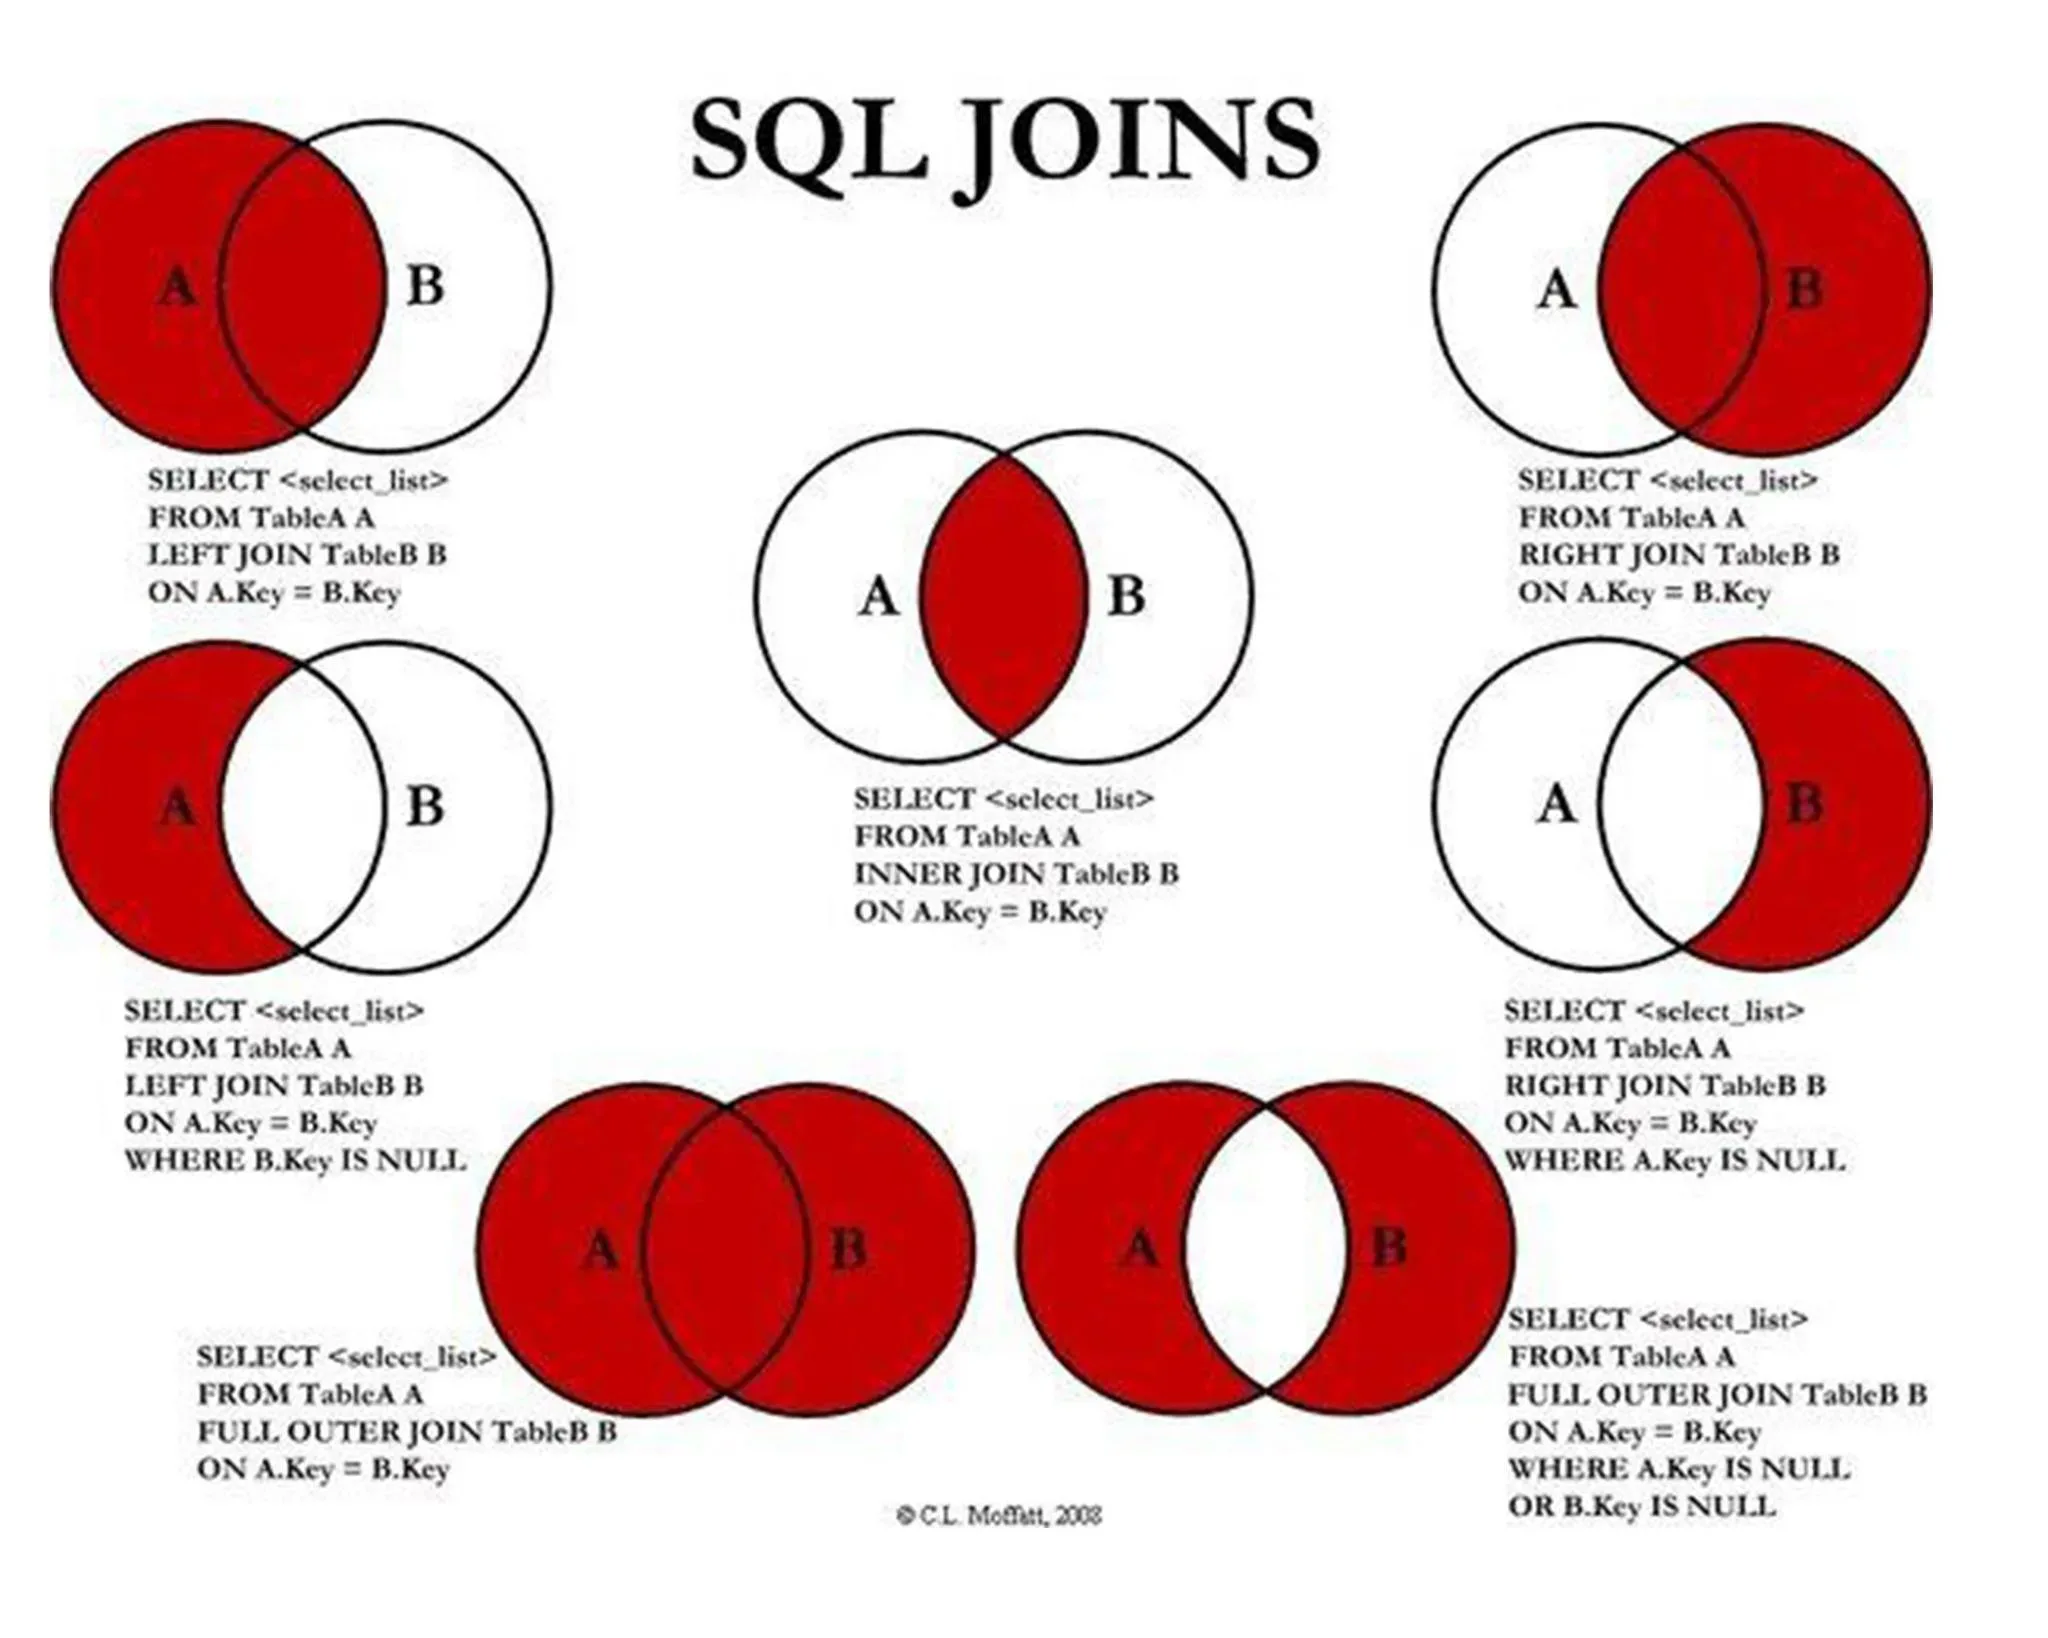 Exemplo de união entre conjuntos utilizando o comando JOIN do SQL.